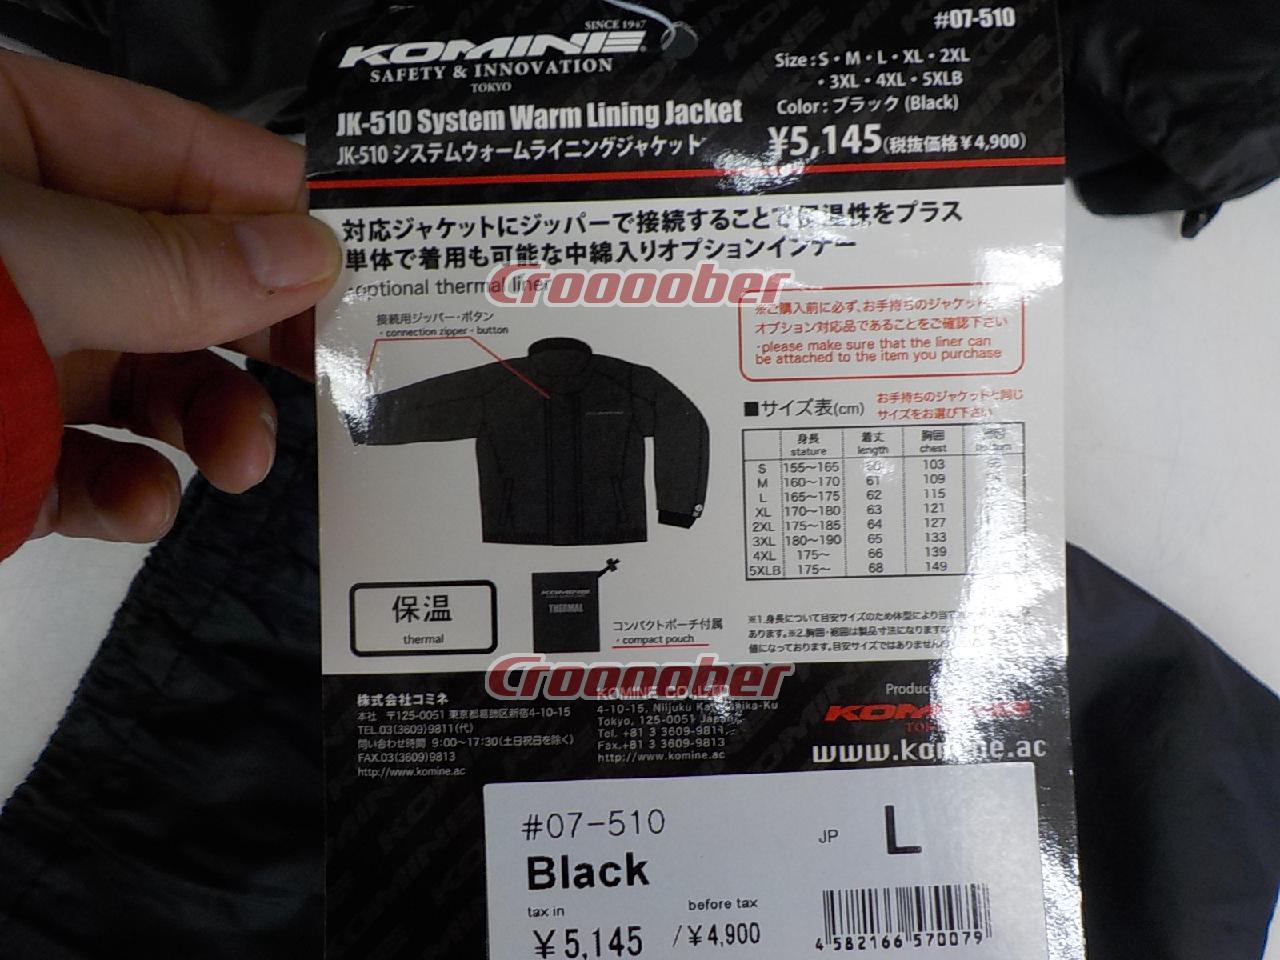 コミネ Komine バイク用 BK Lサイズ ジャケット 07-510 黒 ブラック L システムウォームライニングジャケット JK-510  Jacket